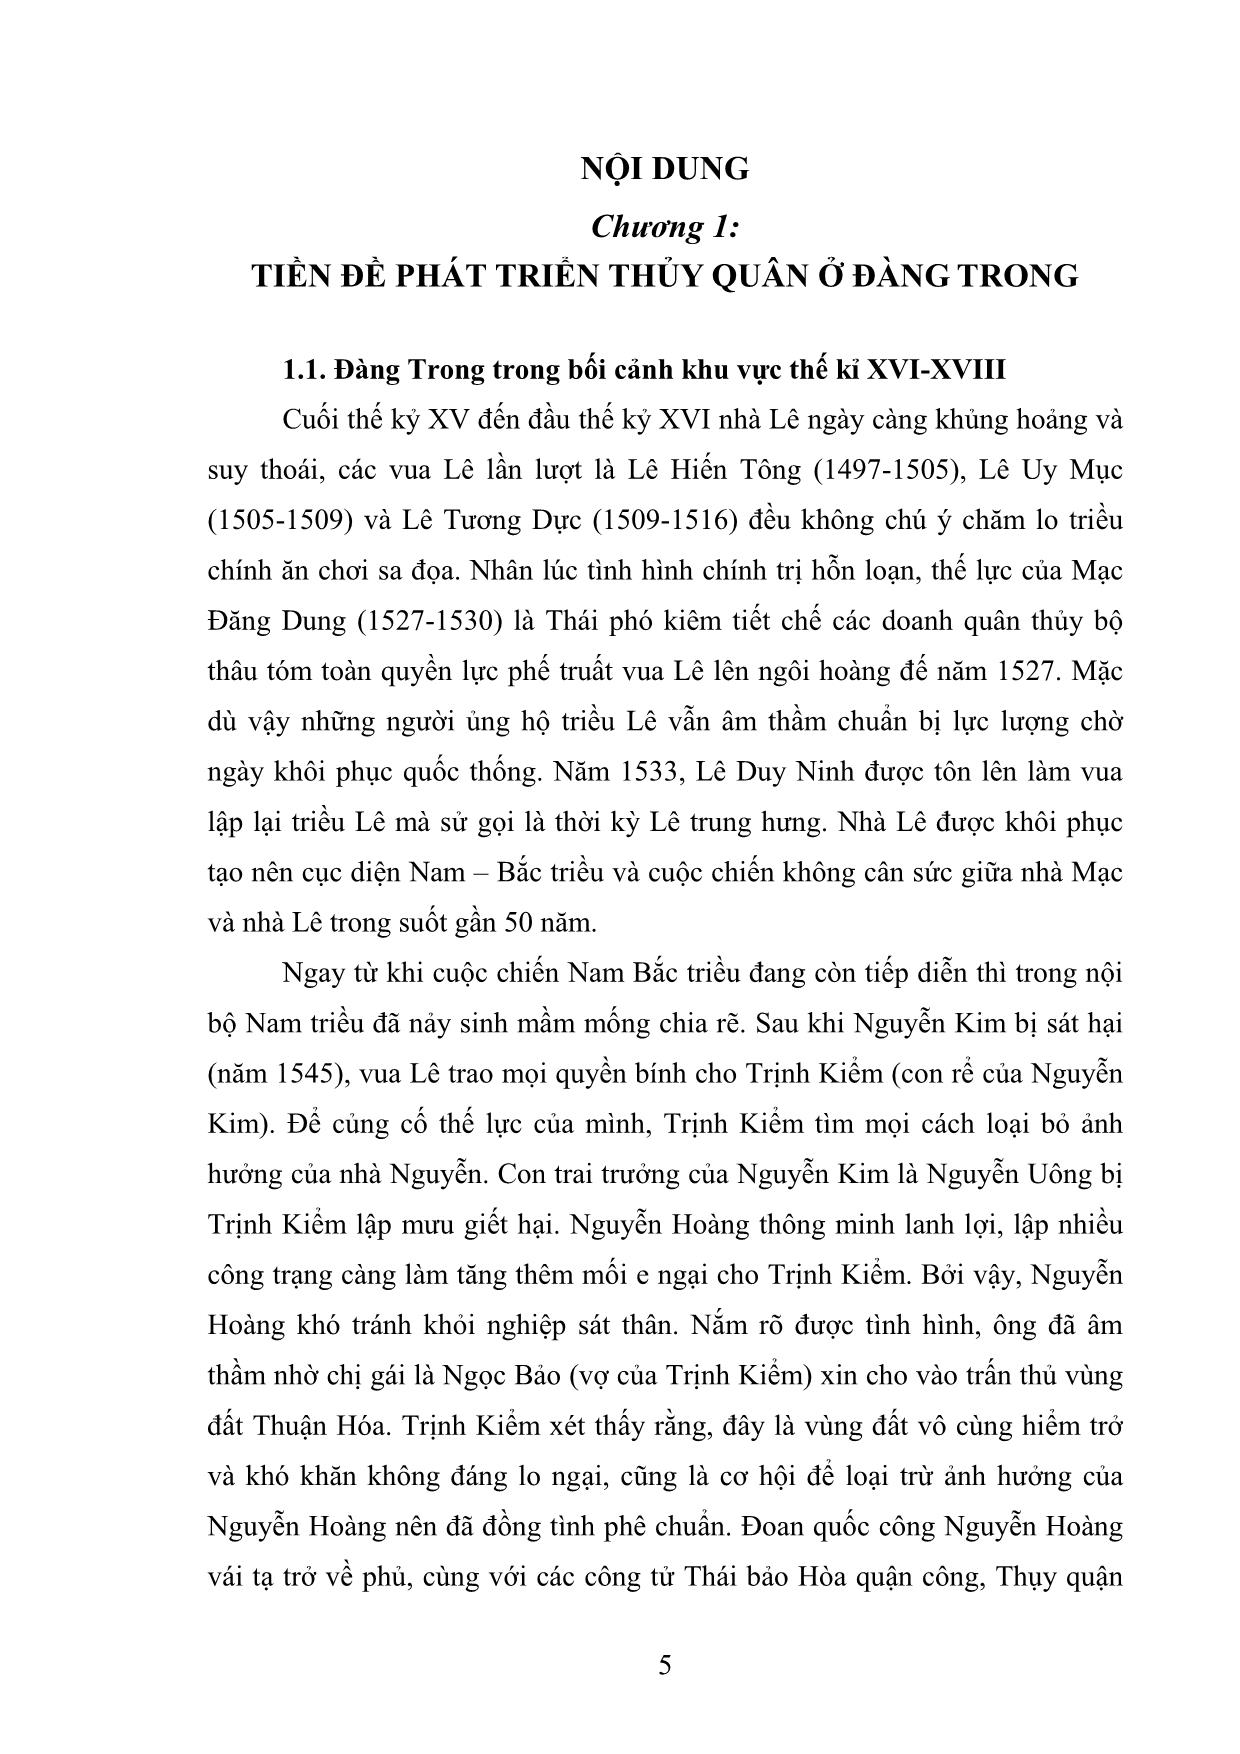 Khóa luận Chính sách phát triển thủy quân của các chúa Nguyễn ở Đàng Trong thế kỉ XVI-XVIII trang 9